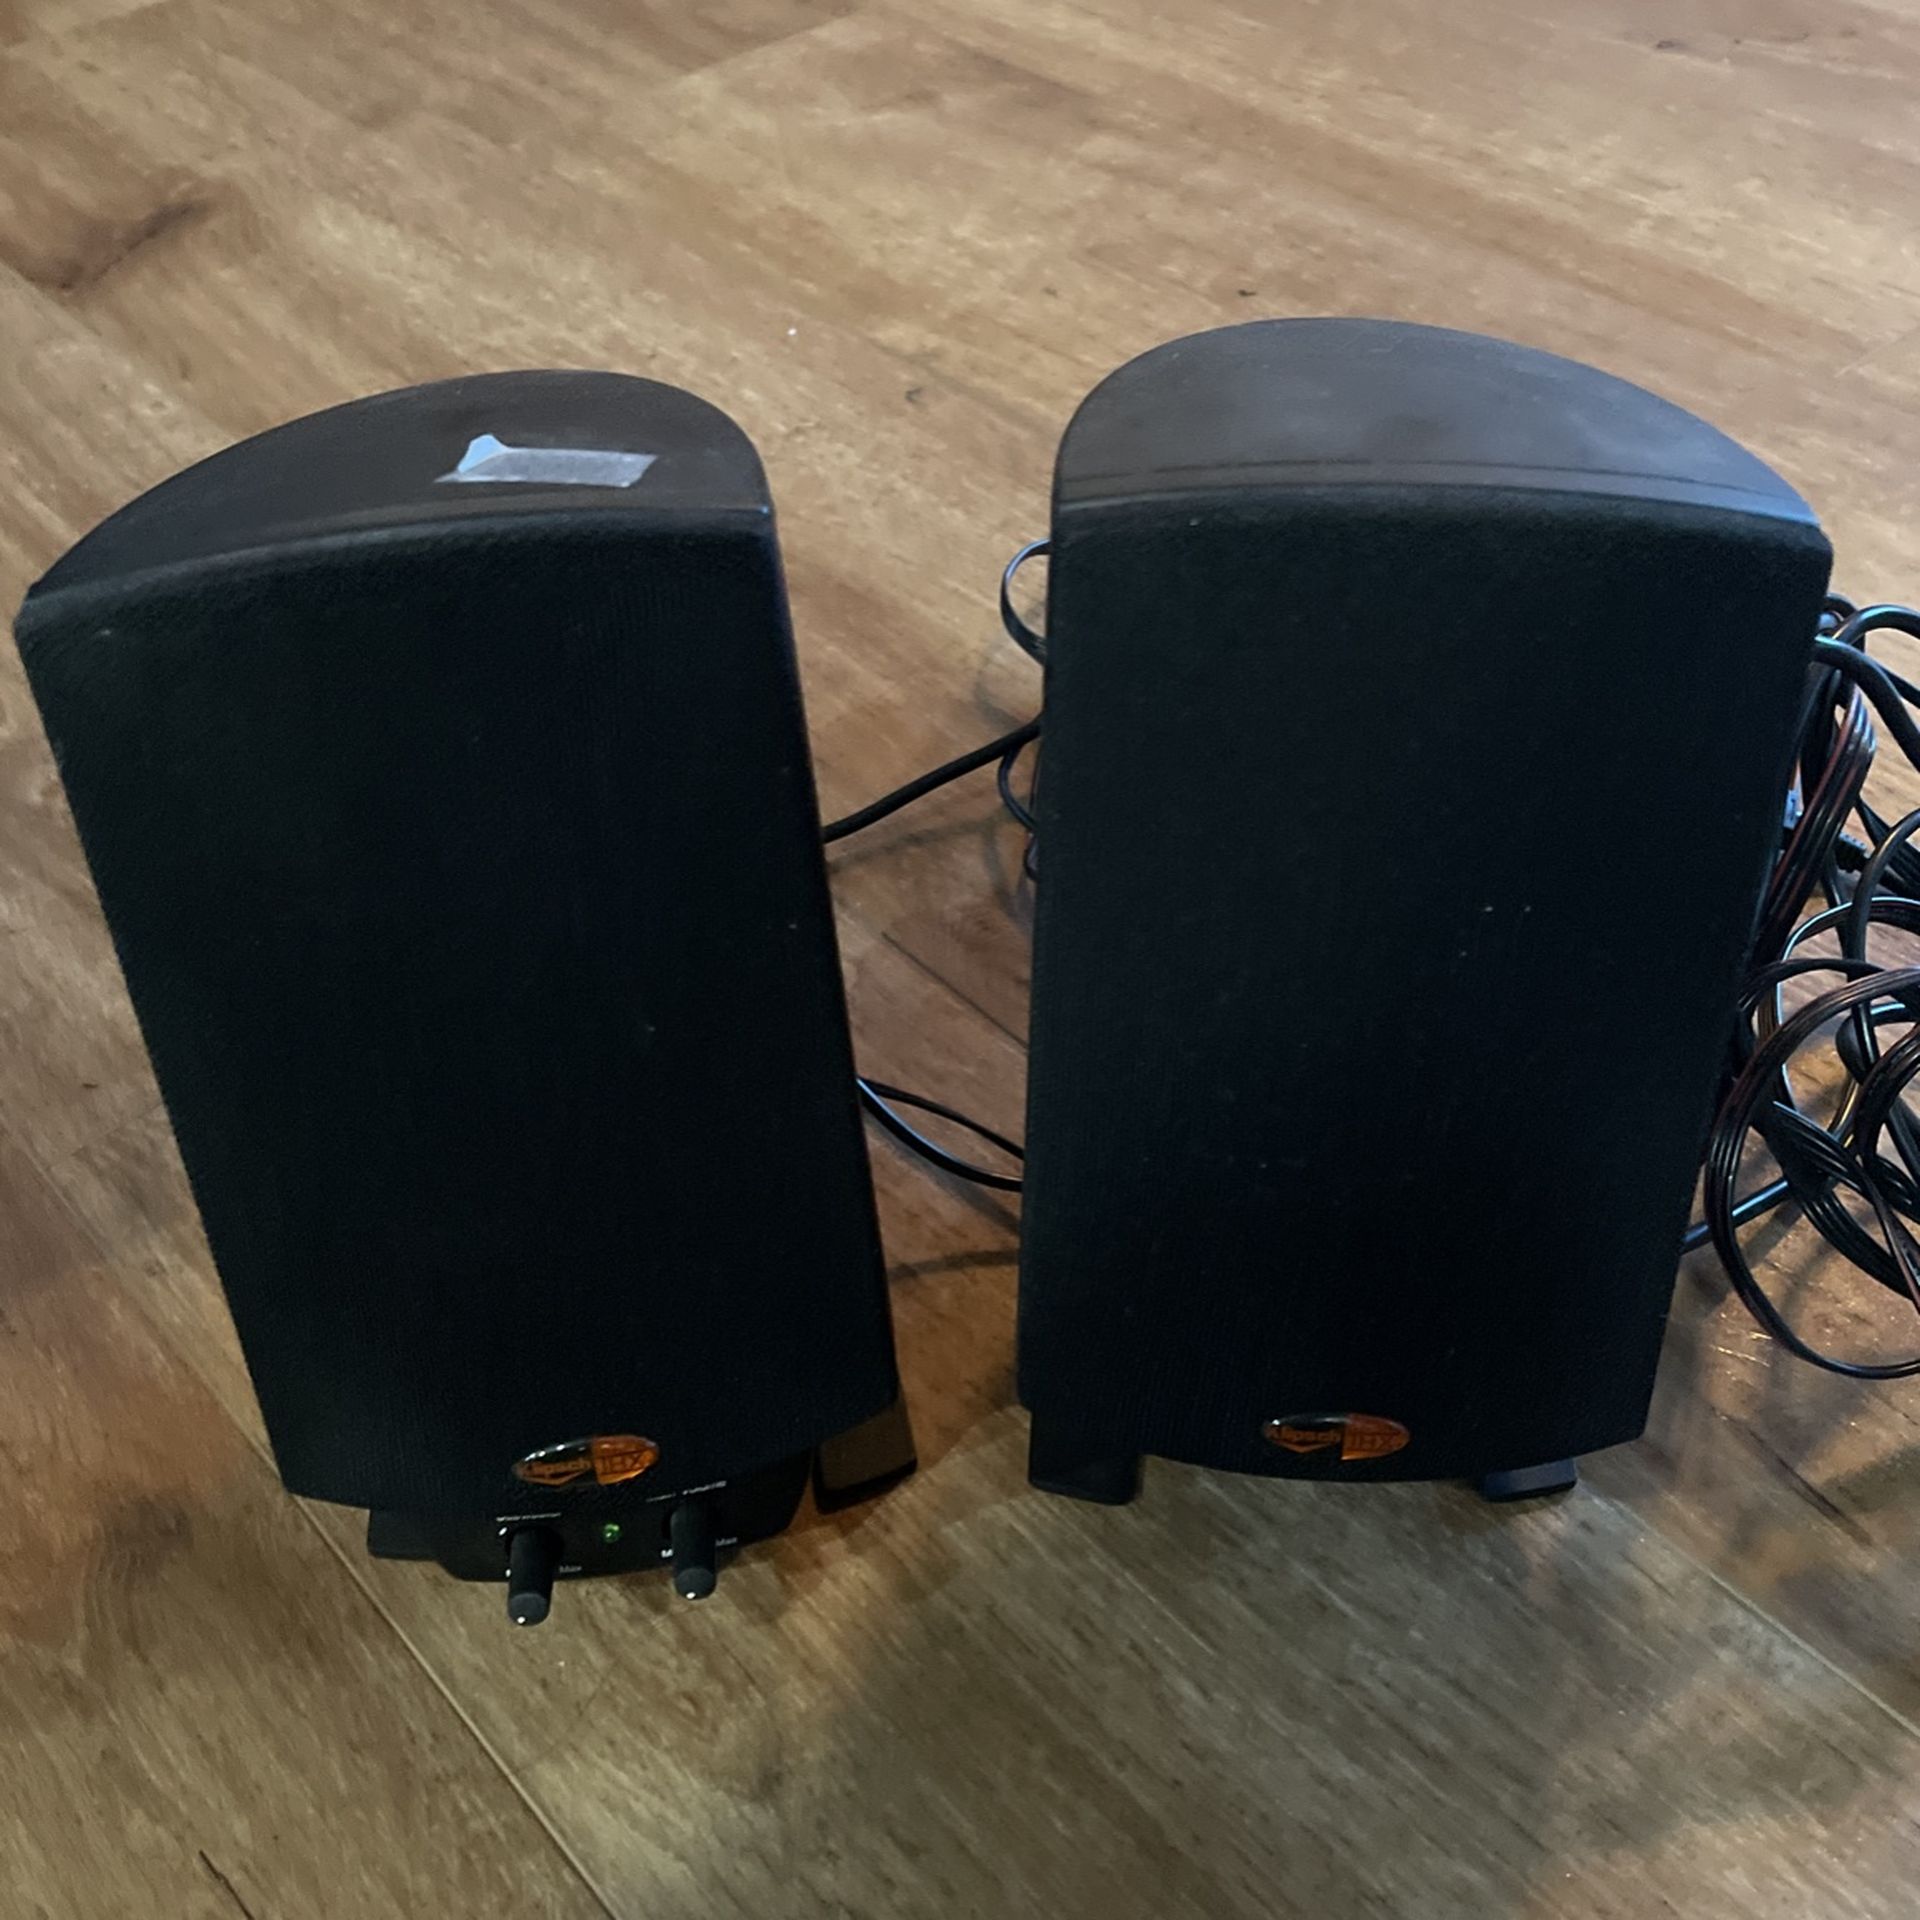 2 Klipsch Speakers 7”x4”